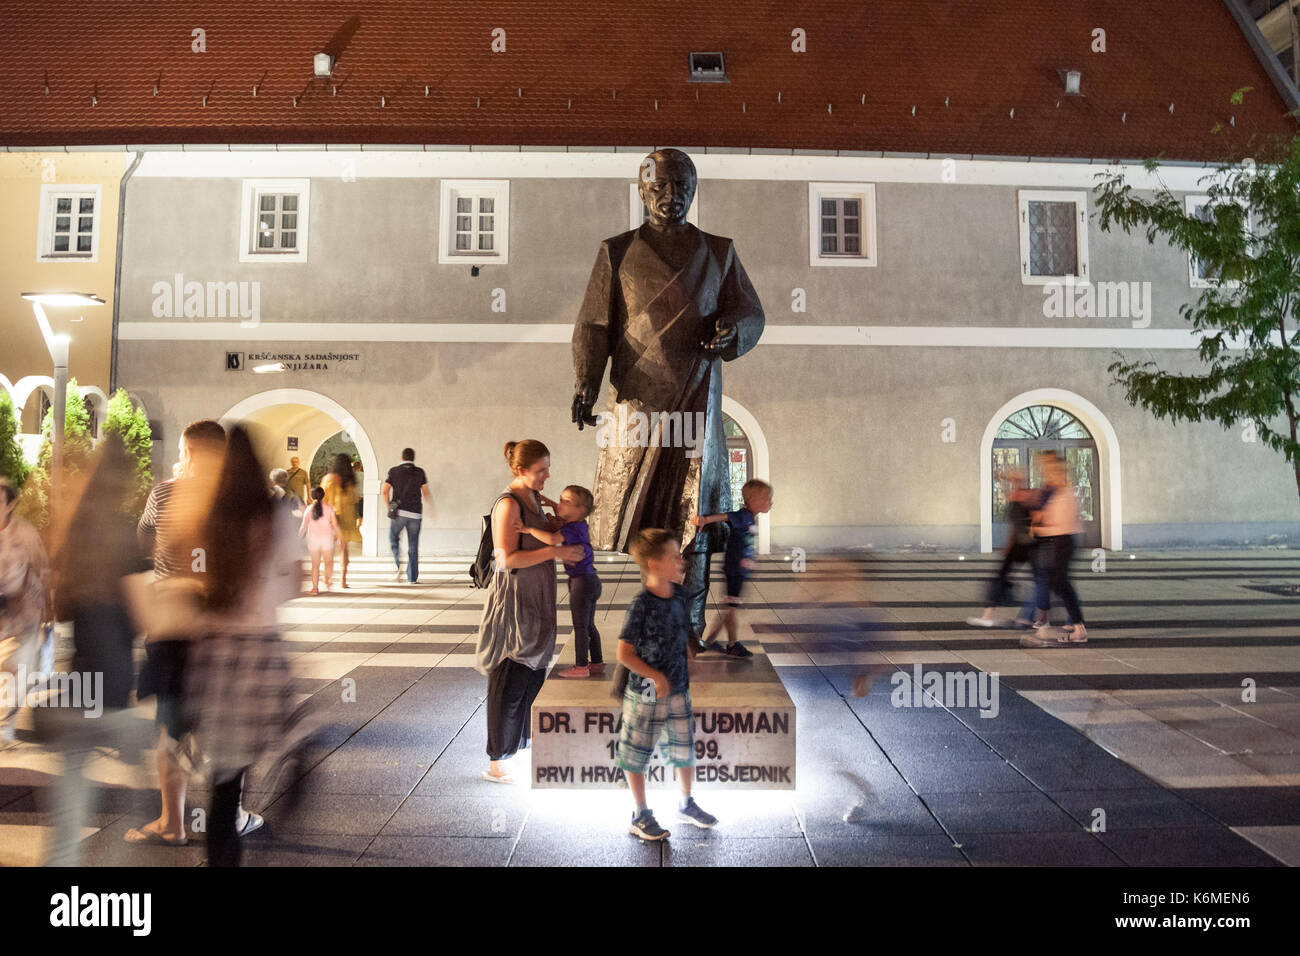 Osijek, Croazia - agosto 25, 2017: i bambini a giocare di notte davanti alla statua di franjo tudman. Franjo Tudjman è stato il primo presidente della repubblica di croazia, Foto Stock